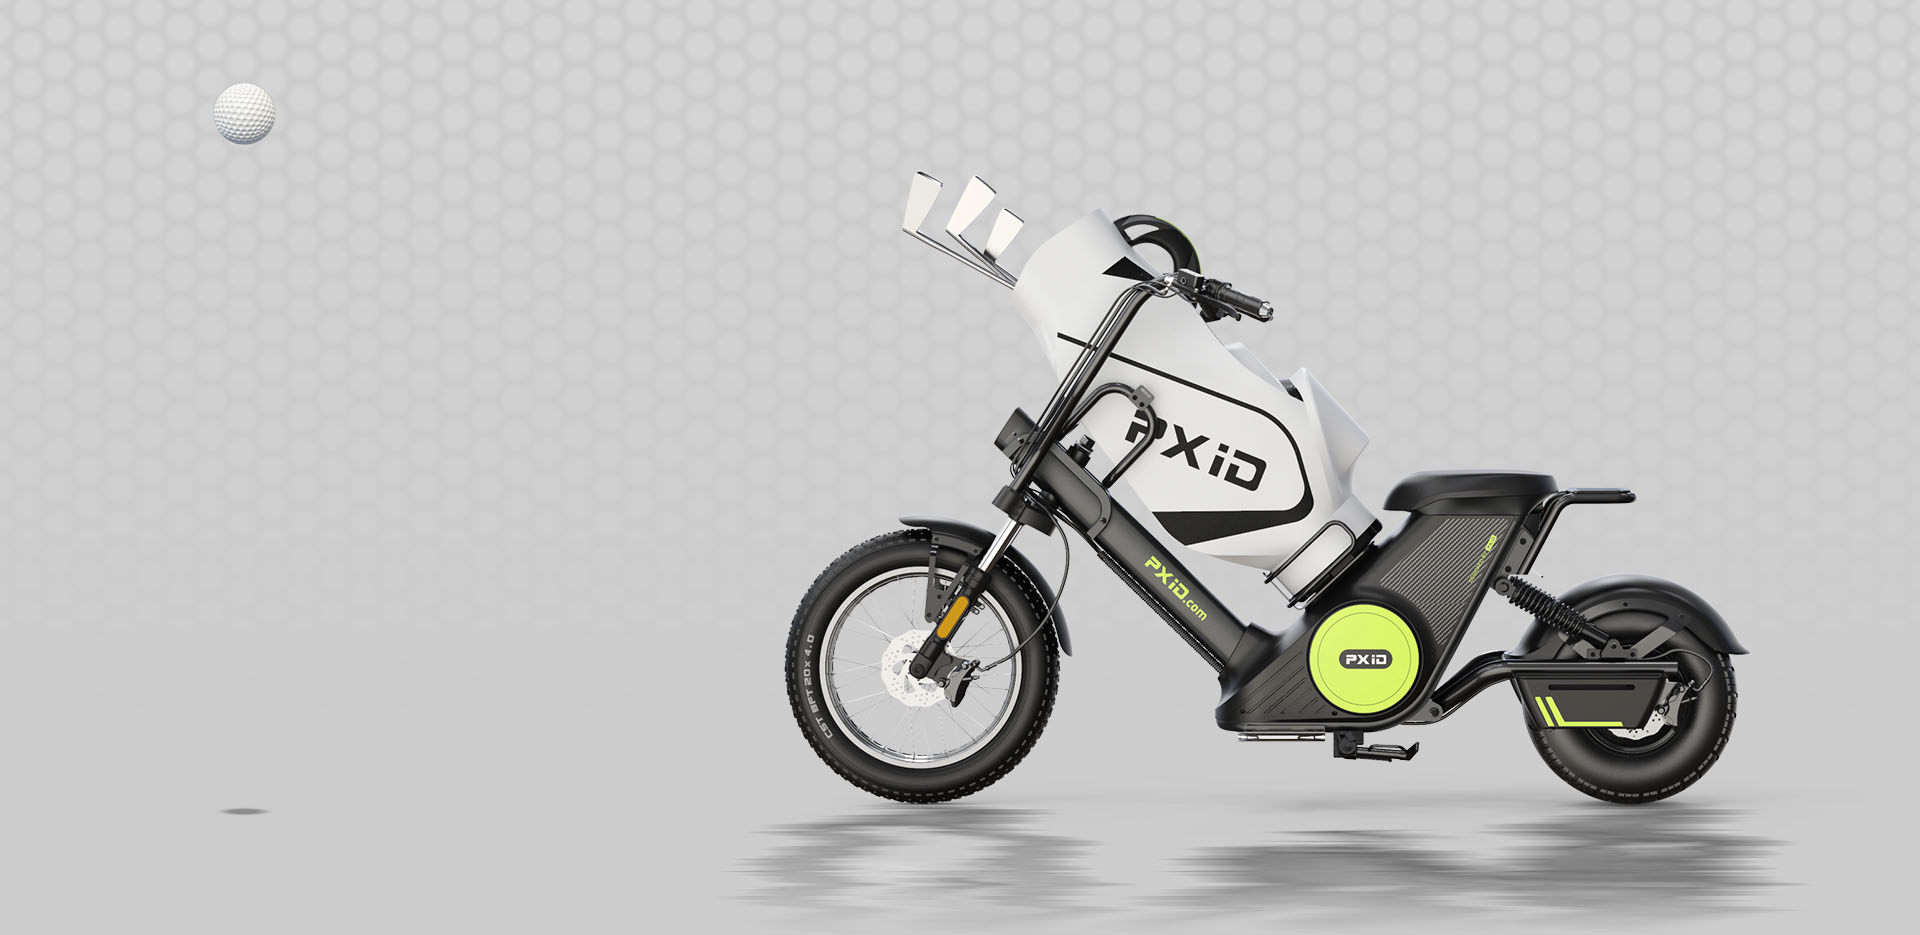 Motocicletta elettrica a batteria rimovibile Citycoco da 2000 W con sacca da golf Immagine in primo piano